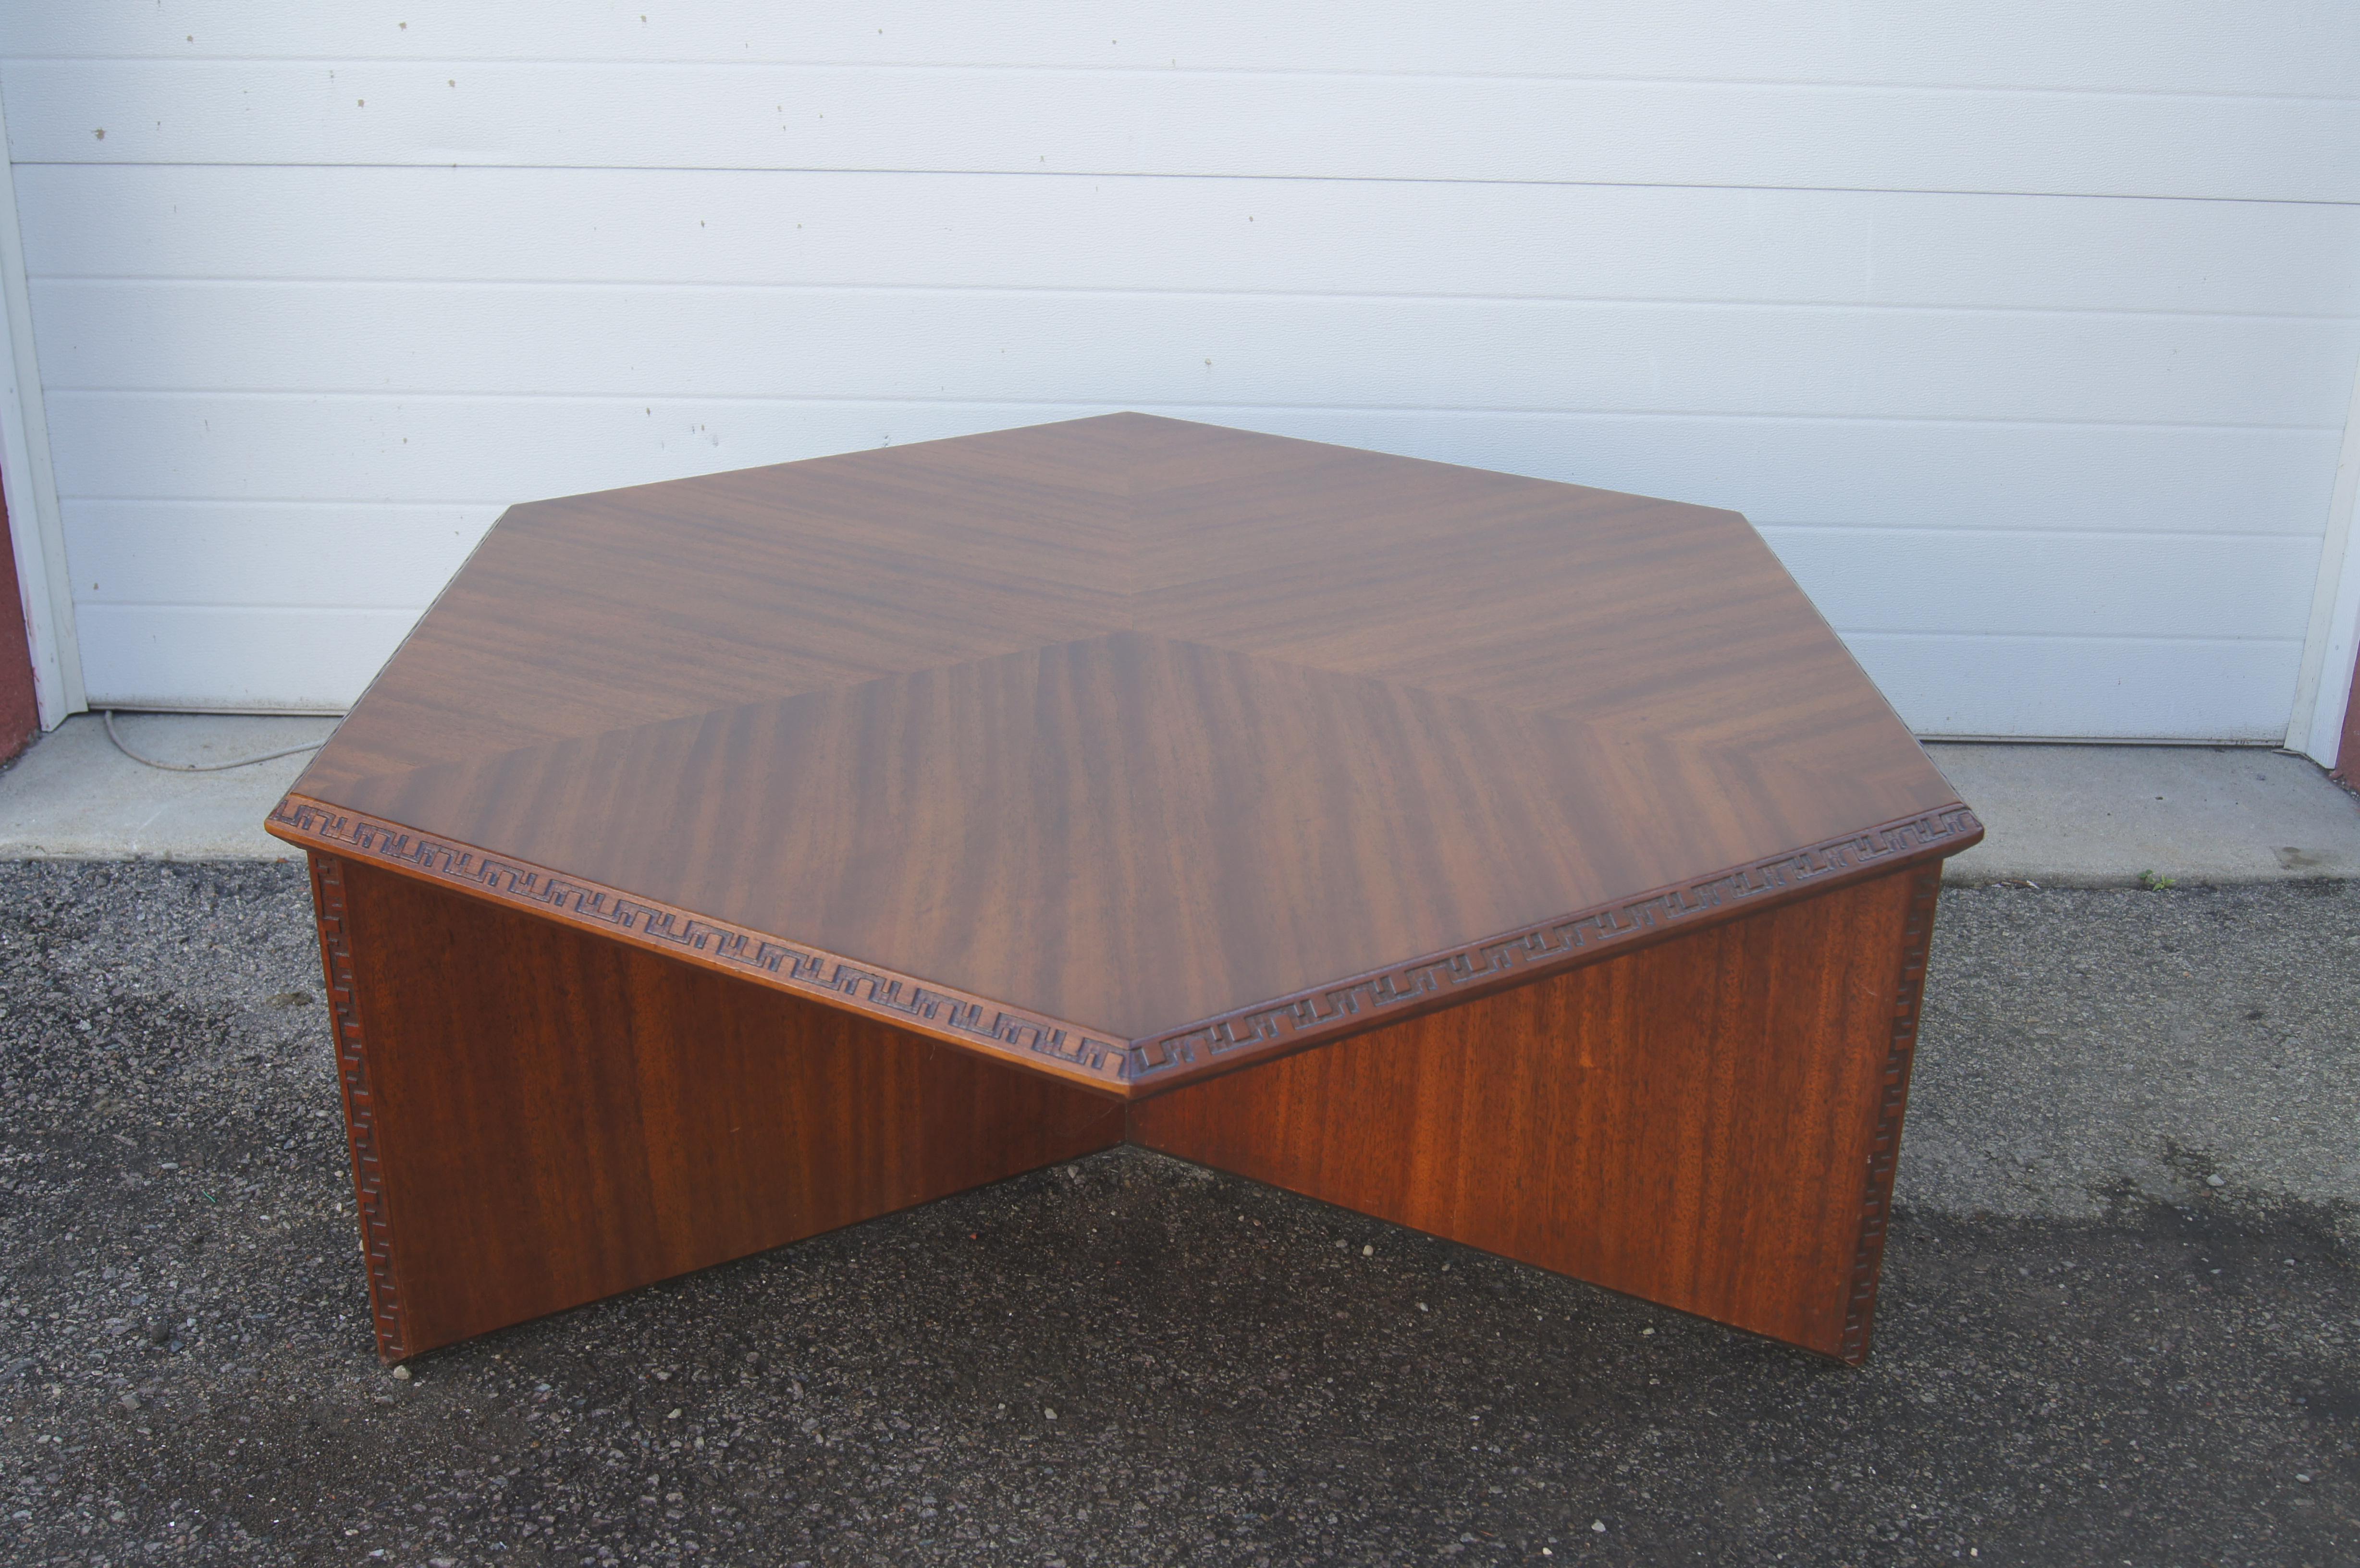 Faisant partie de la collection Taliesin que Frank Lloyd Wright a conçue pour Henredon en 1955, cette table basse en acajou présente un plateau hexagonal sur une base tripode bordée sur le dessus d'un motif en denticules de Taliesin. 

Le cachet de